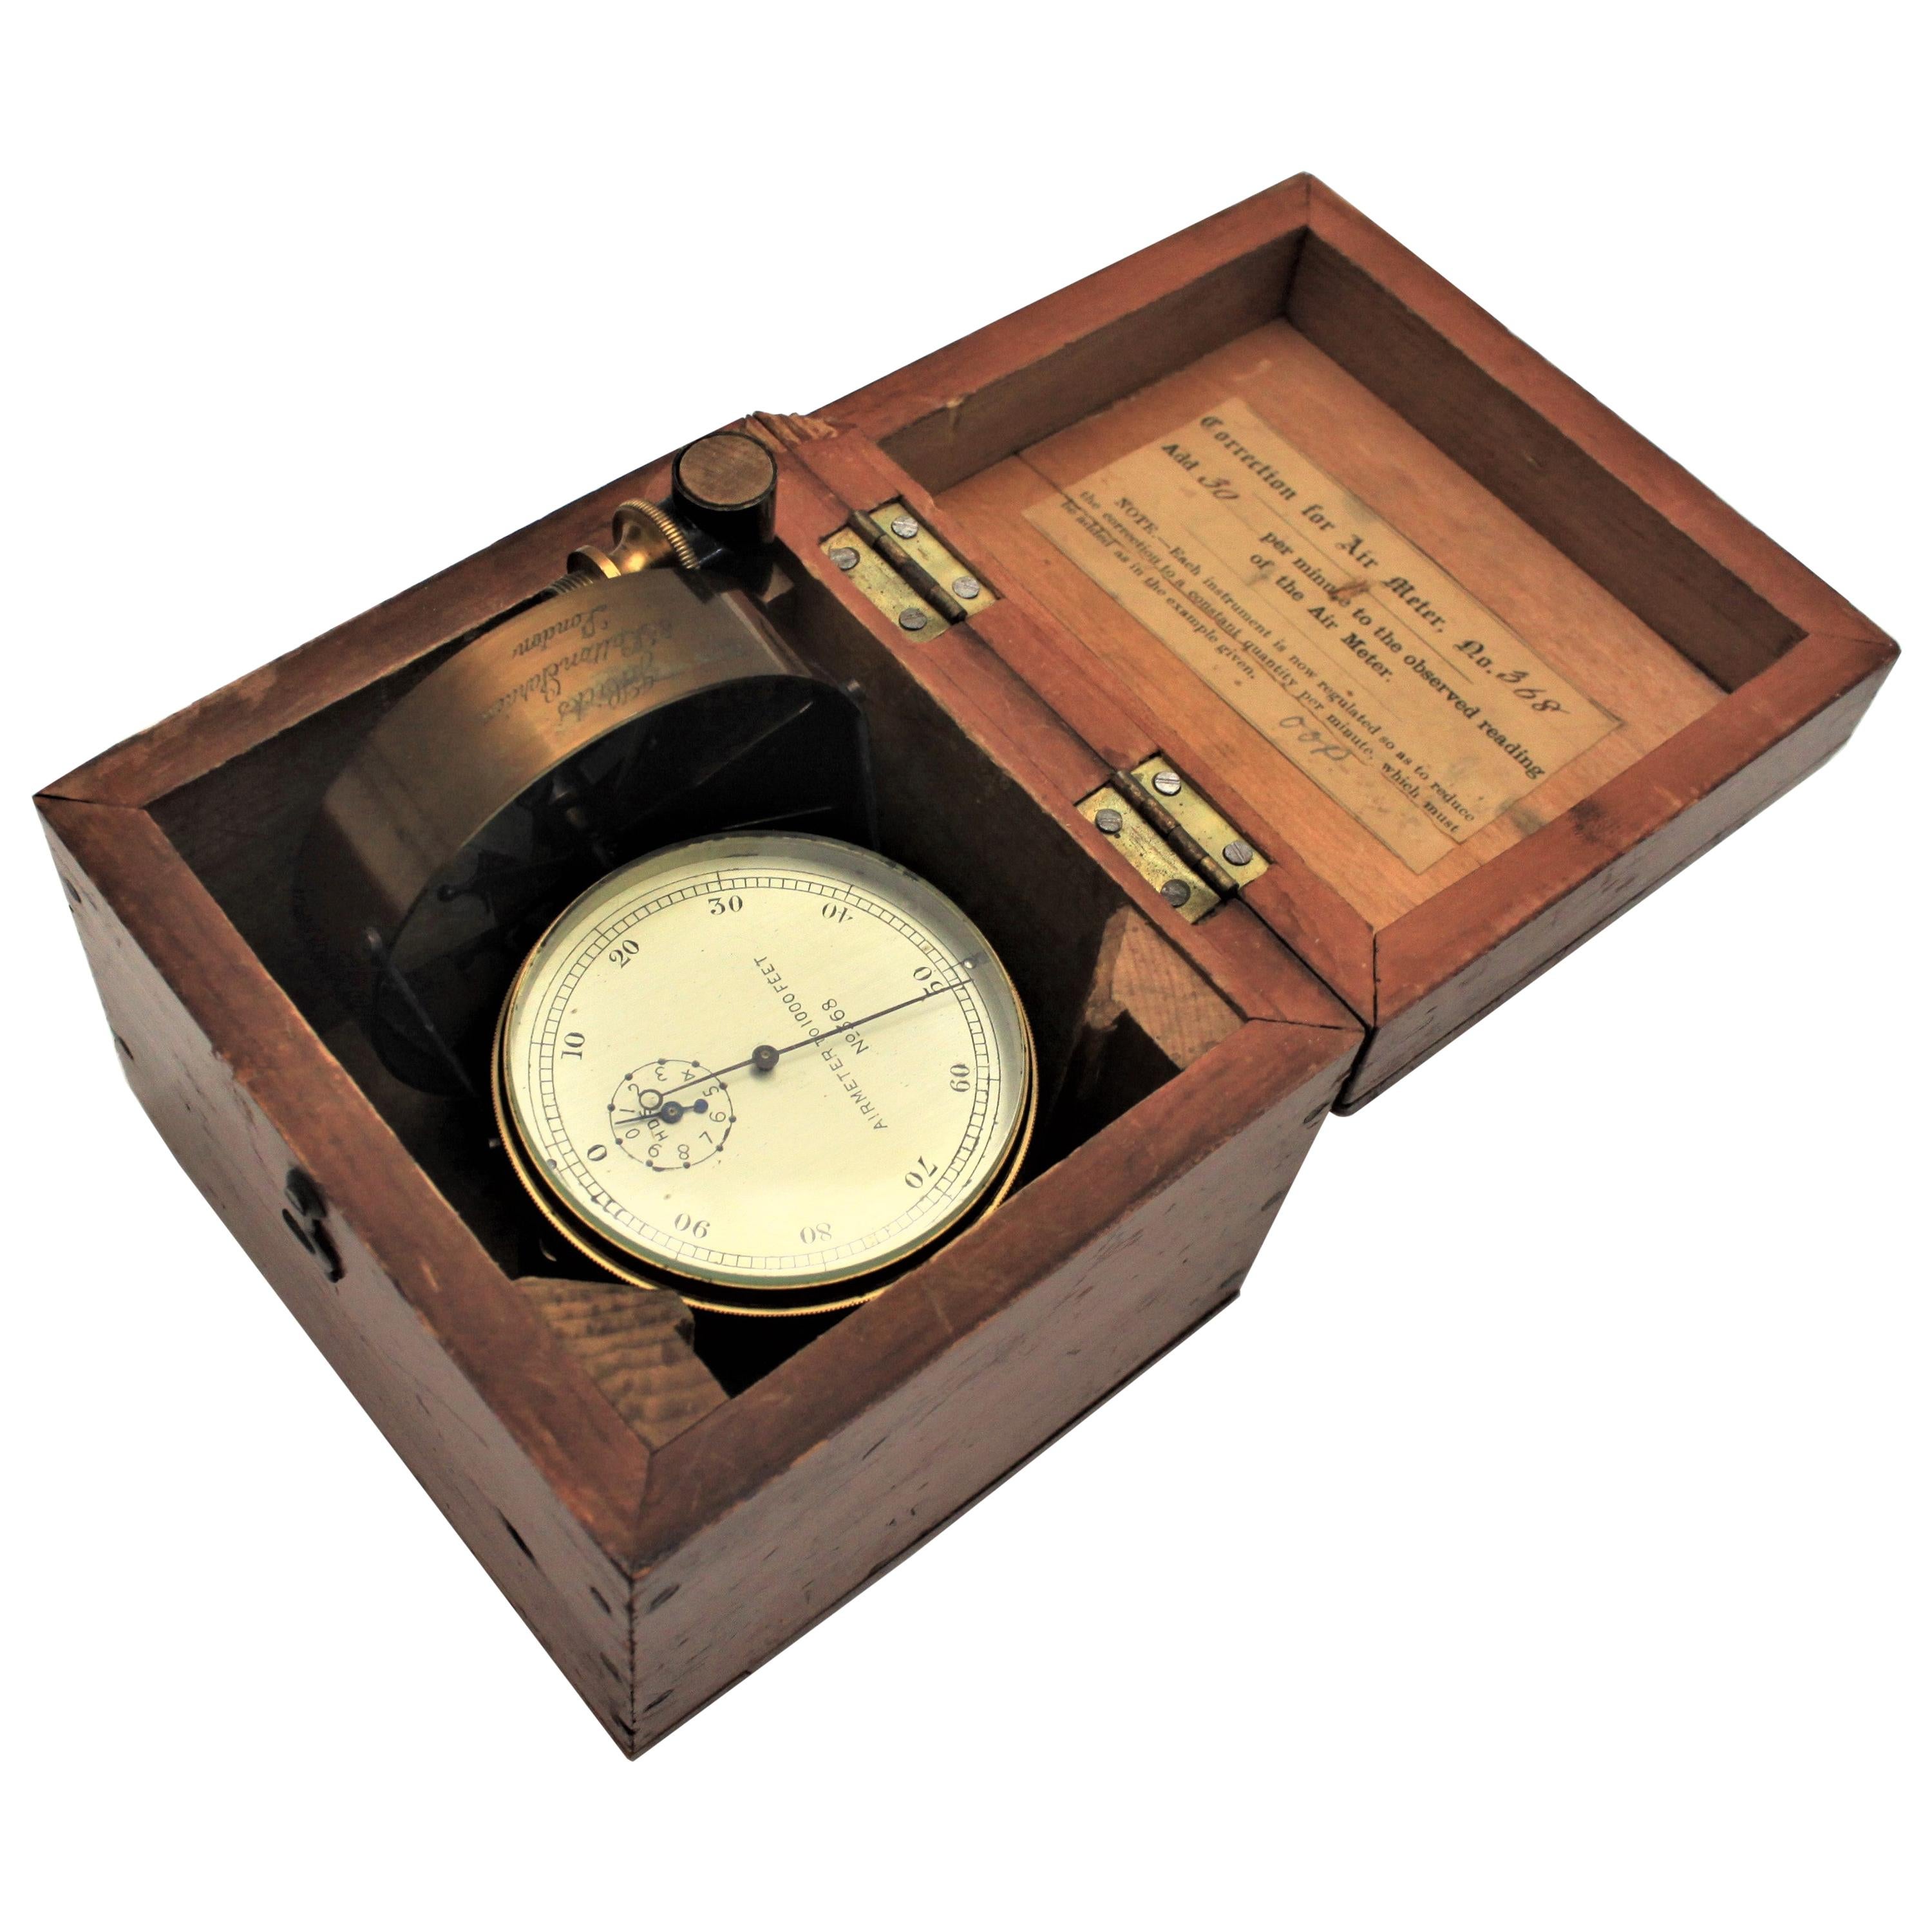 Antique J. Hicks London Brass Scientific Air Meter Instrument with Wooden Case